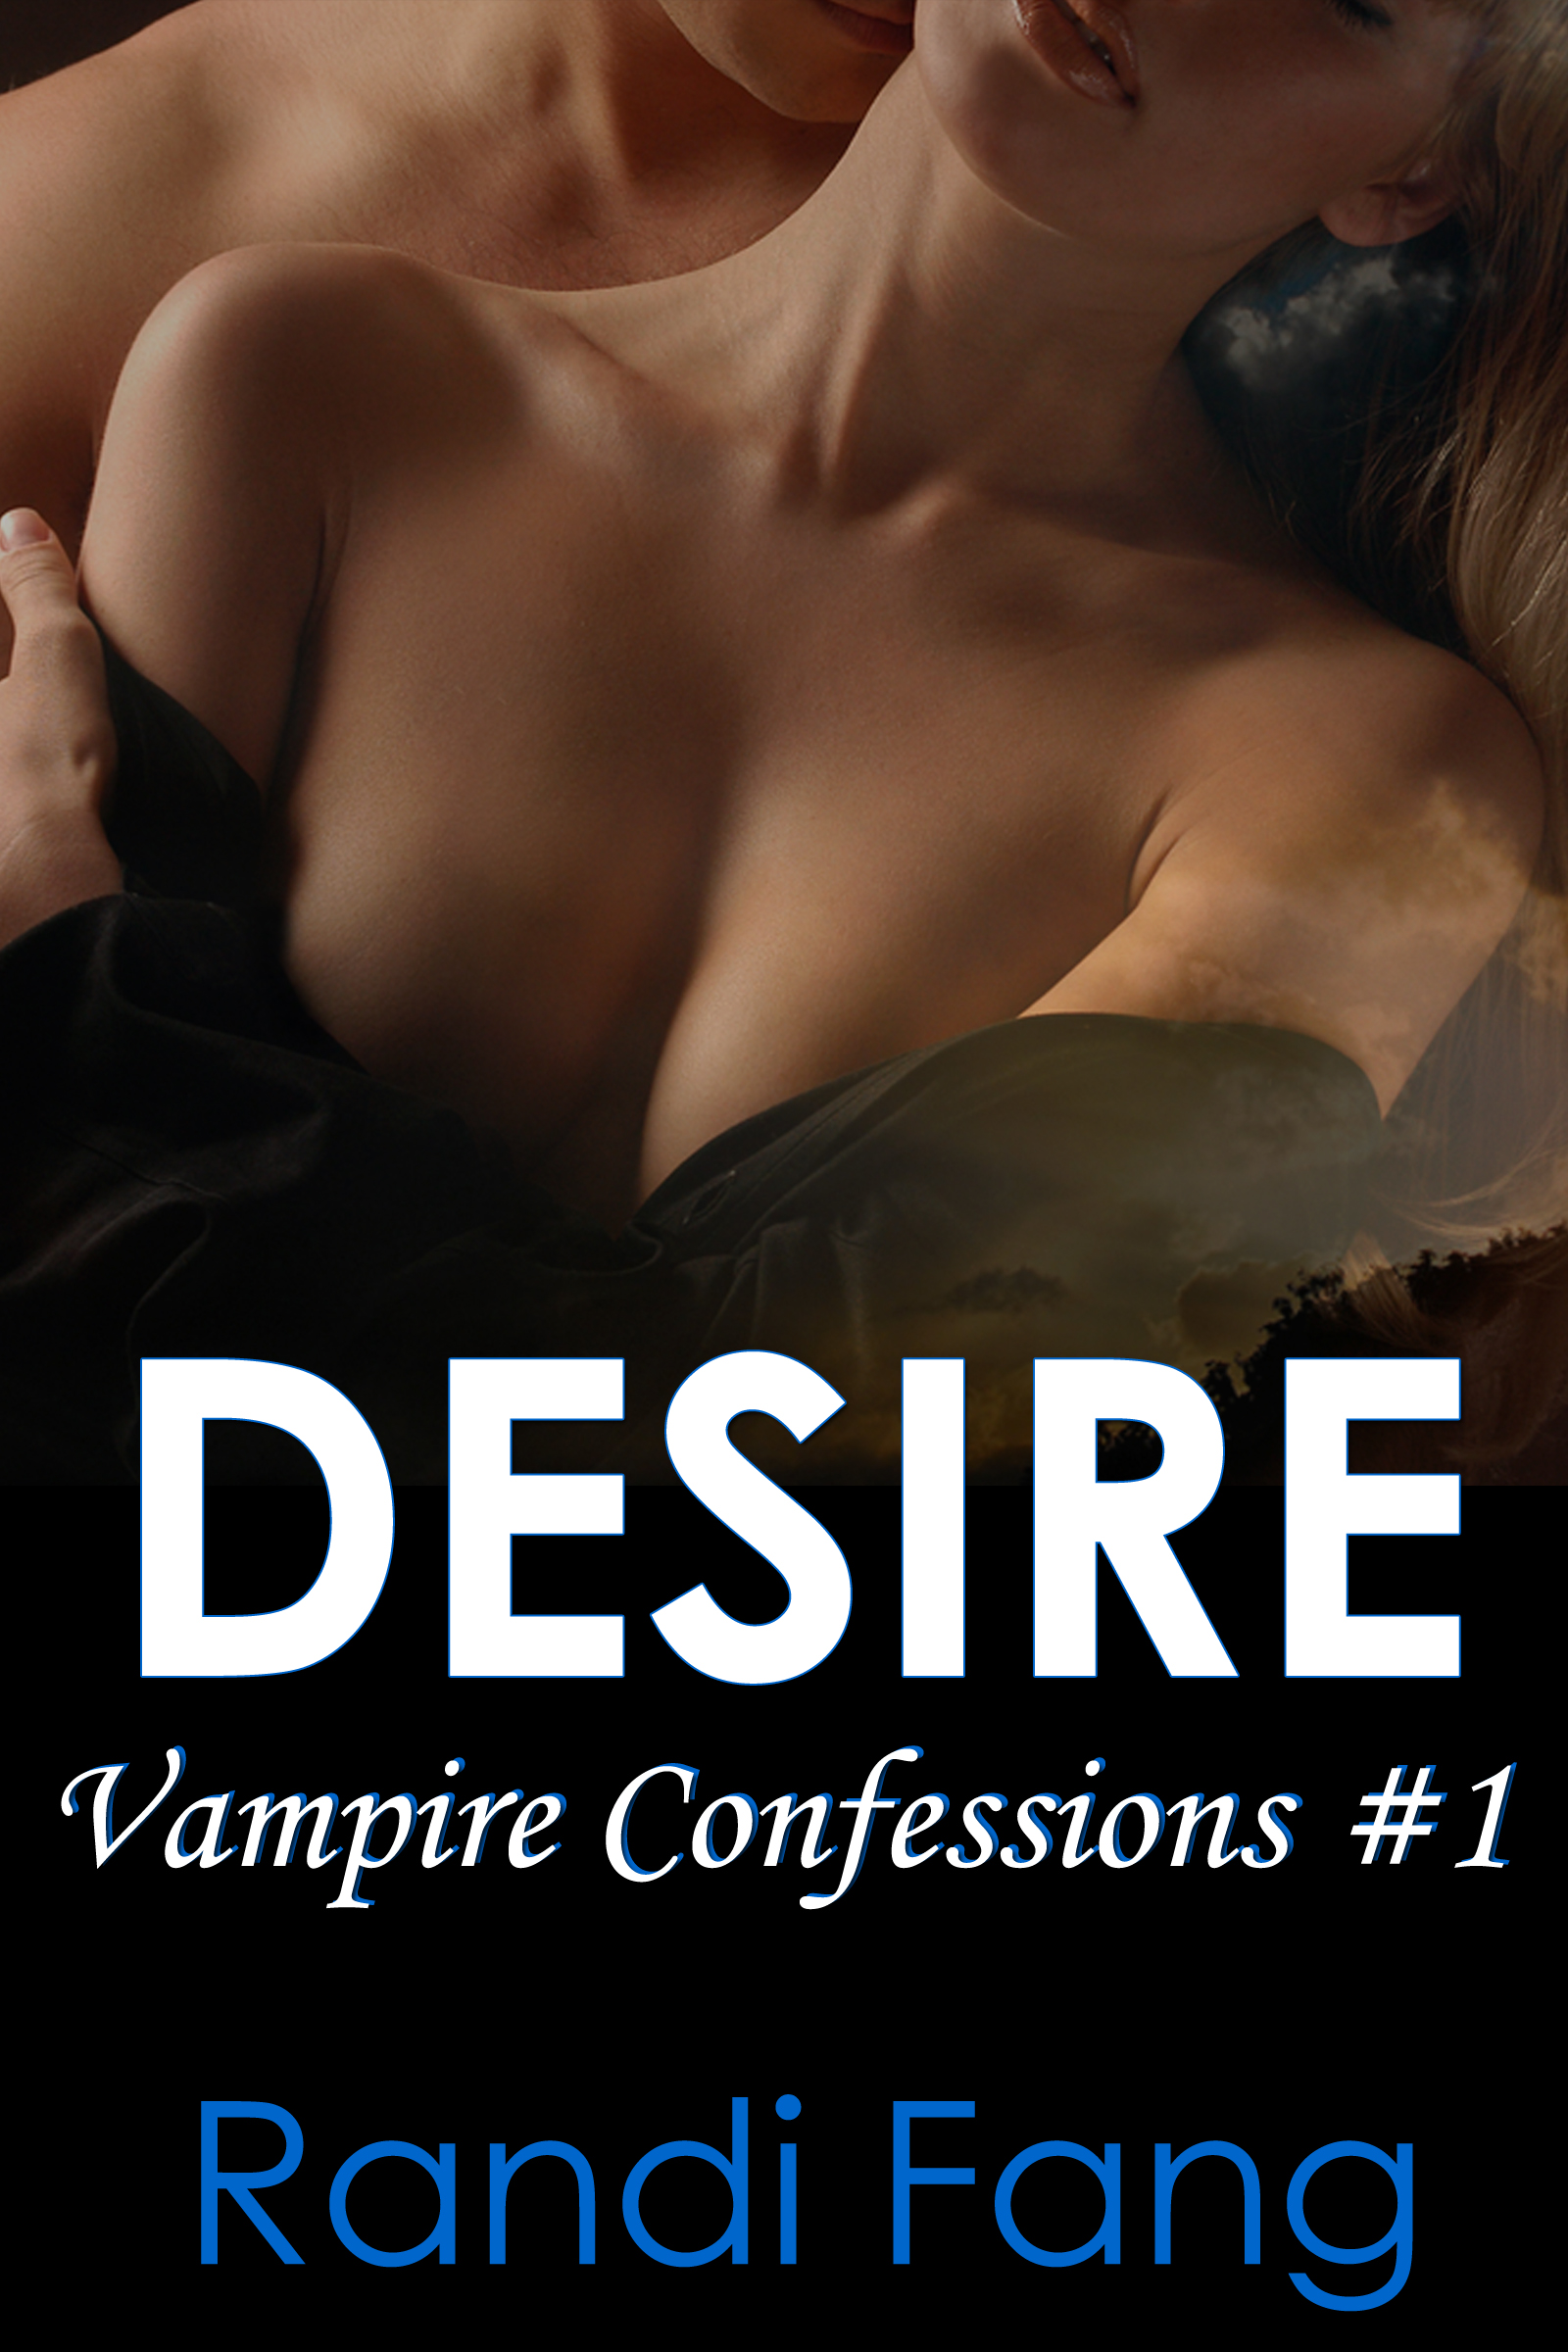 Desire erotic